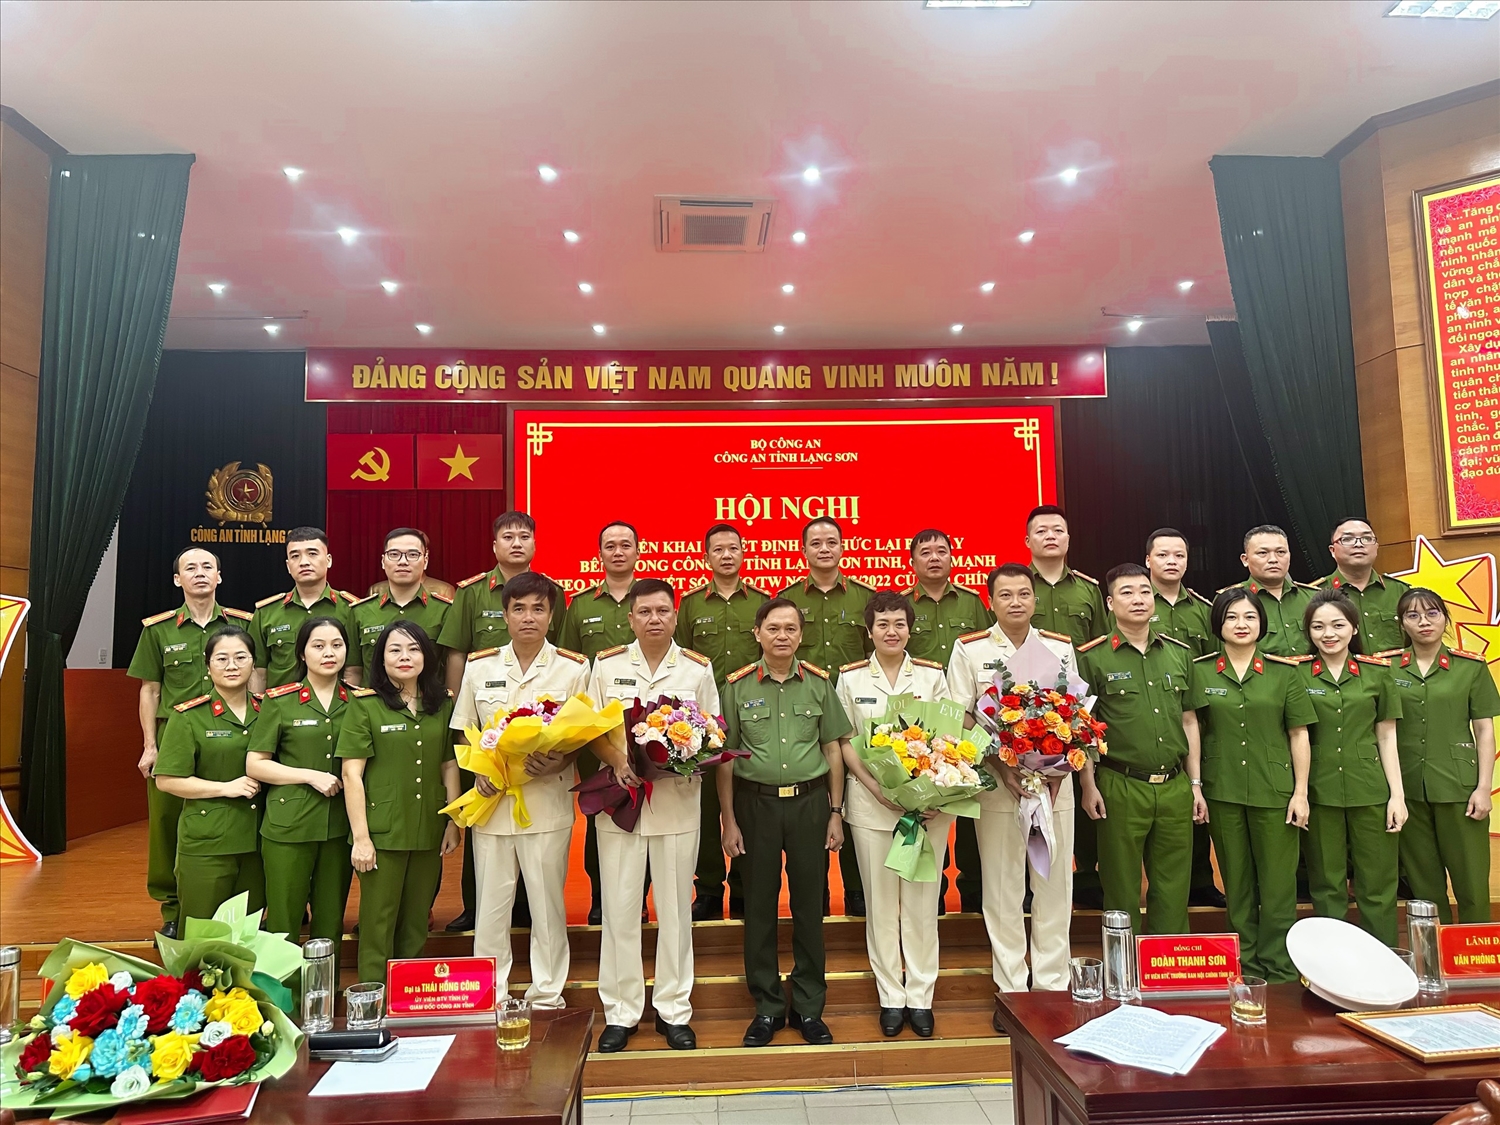 Đại tá Thái Hồng Công – Giám đốc công an tỉnh Lạng Sơn (đứng giữa hàng trên) tặng hoa chúc mừng các đồng chí được luân chuyển, bổ nhiệm